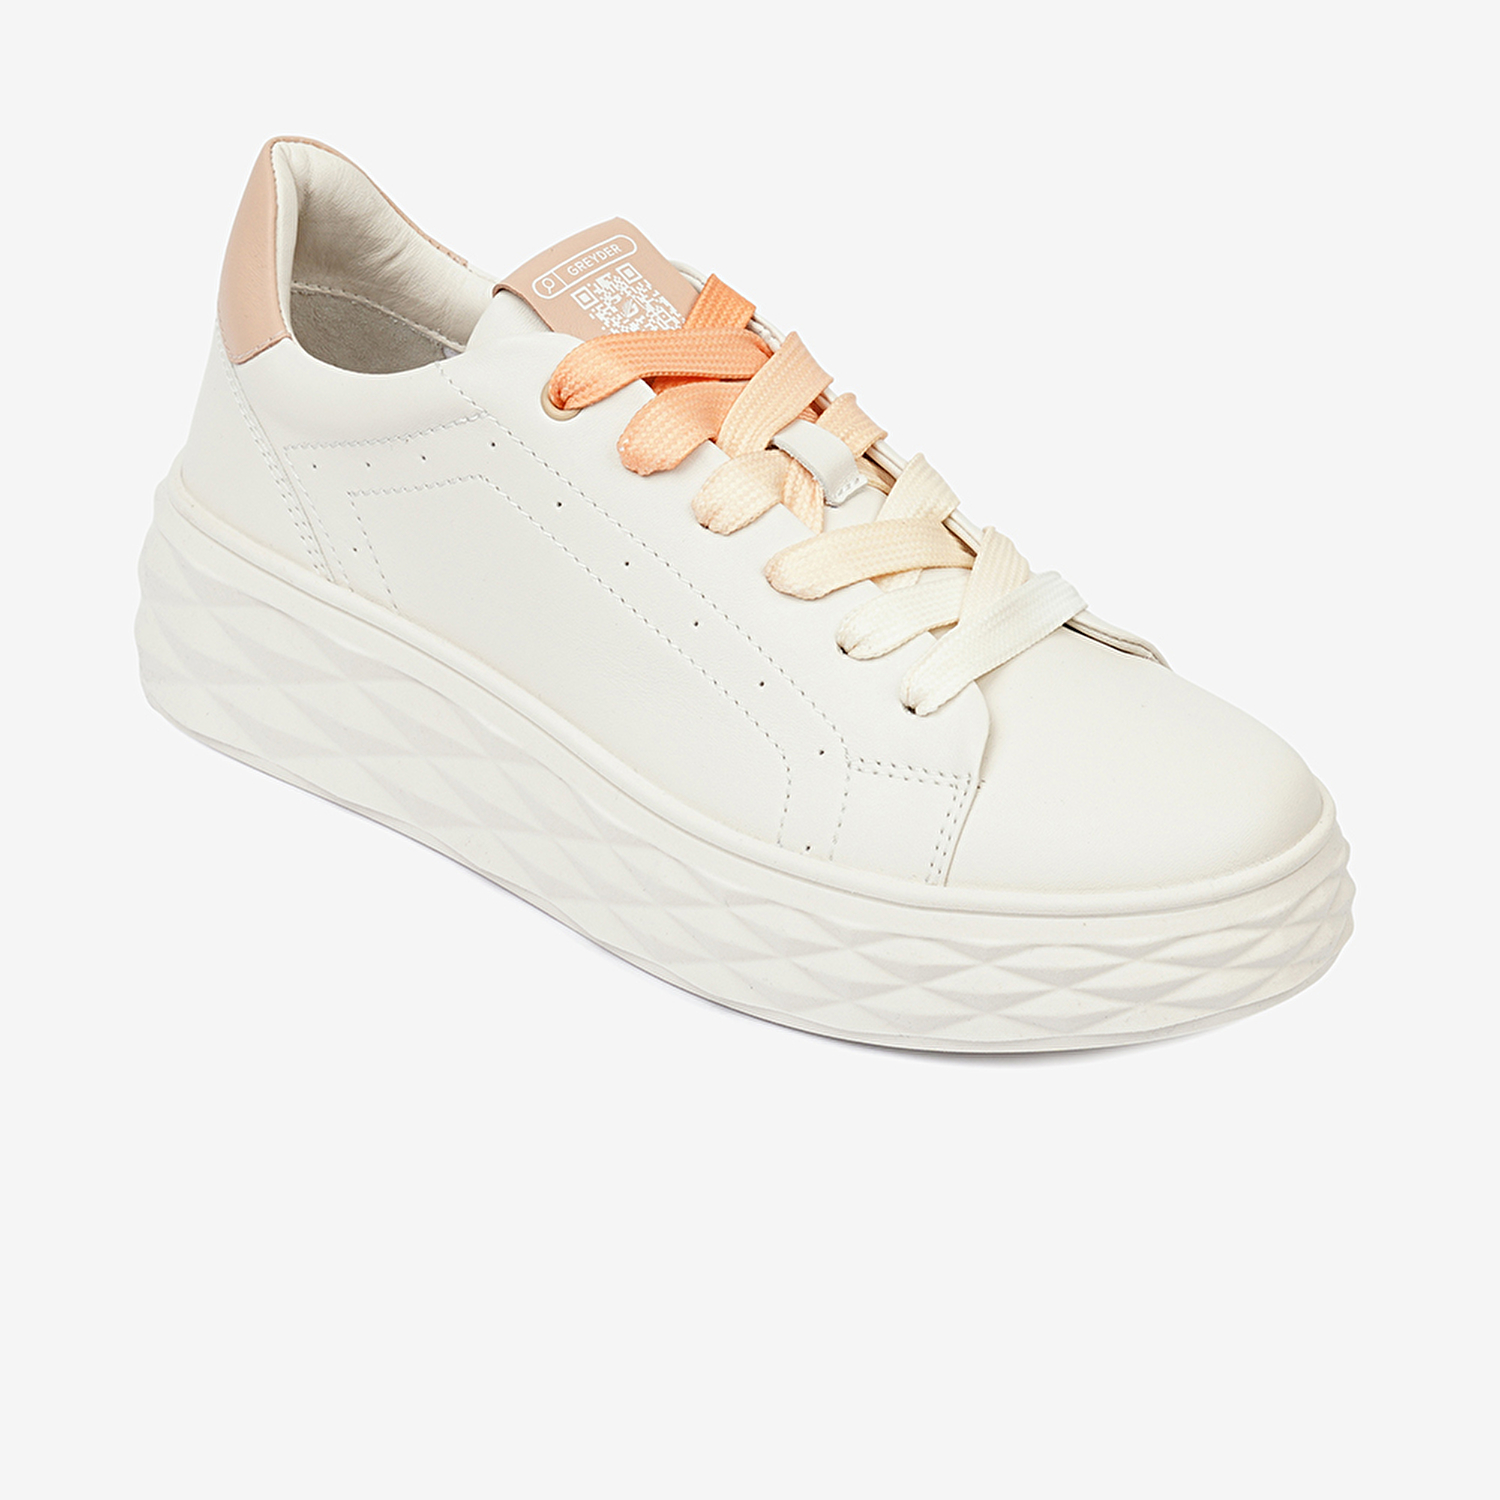 Kadın Kirli Beyaz Nude Hakiki Deri Sneaker Ayakkabı 4Y2SA33380-1